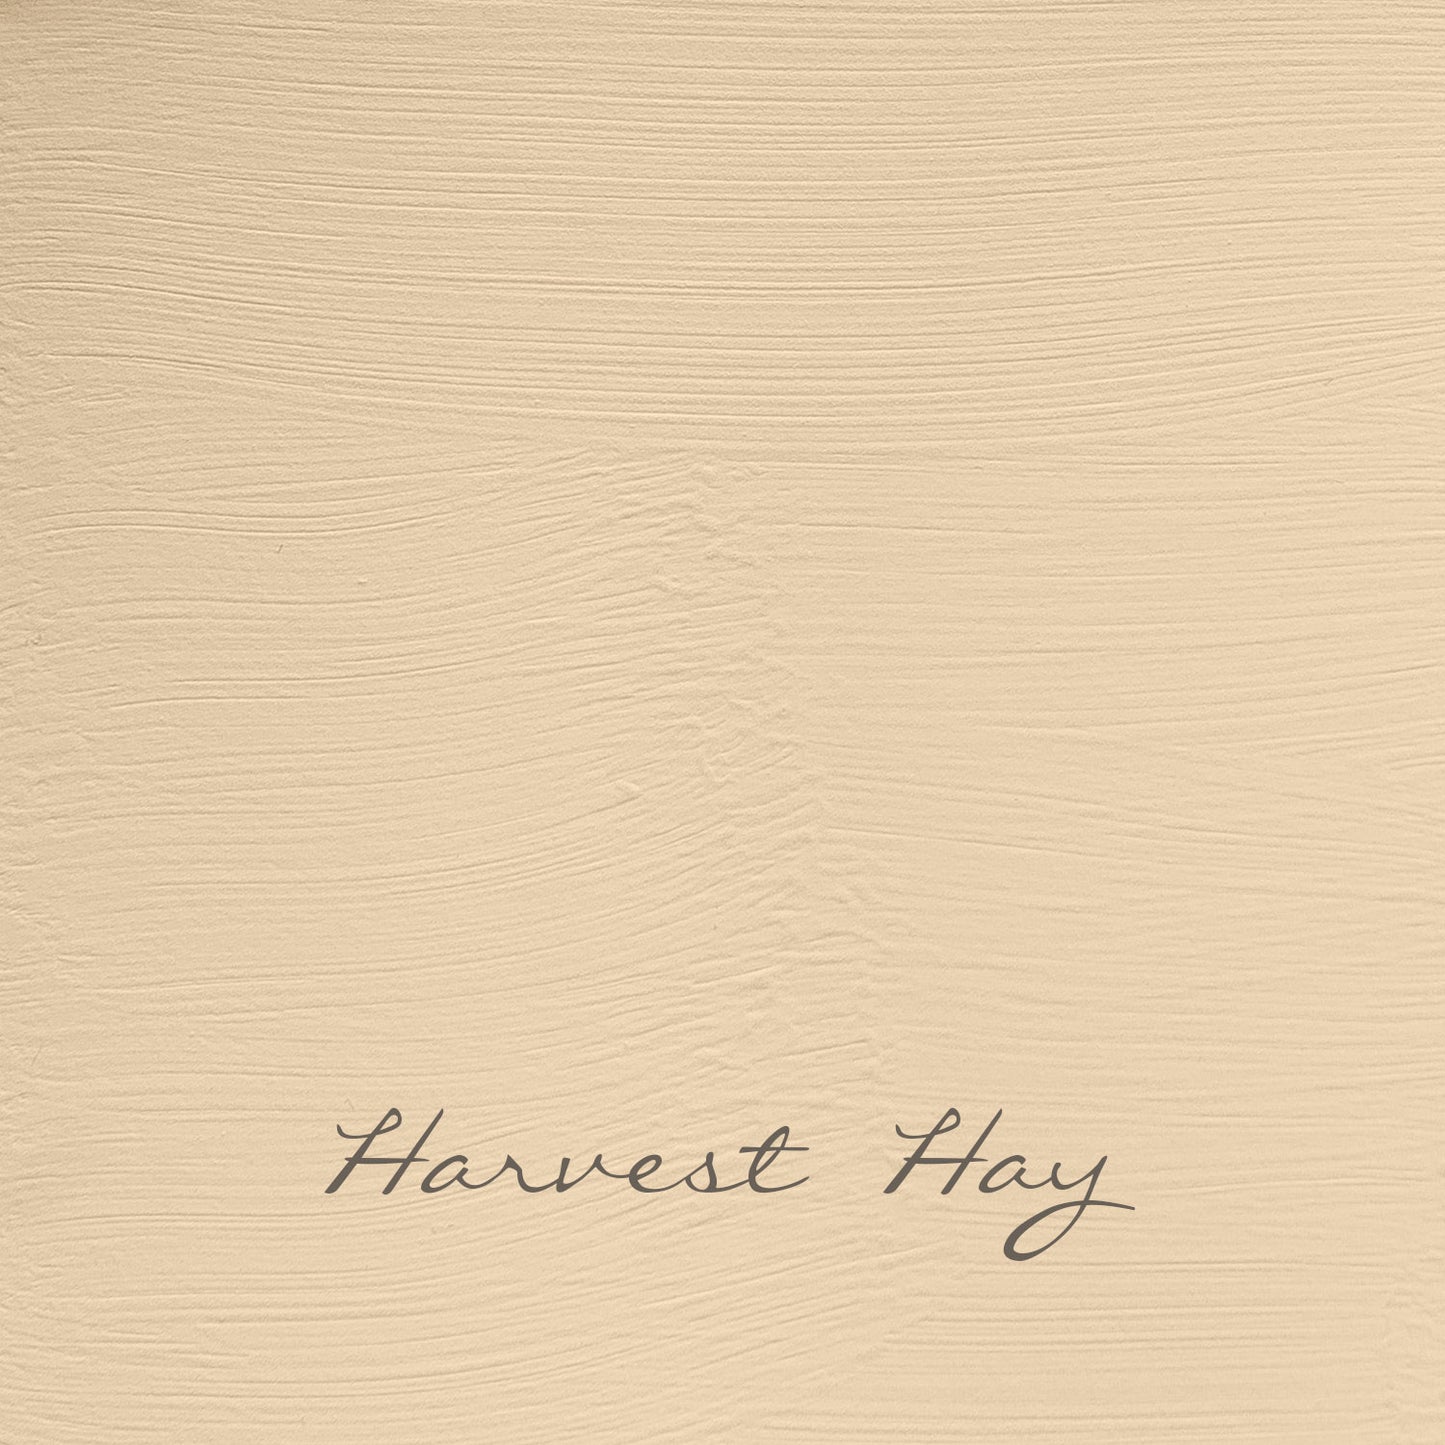 Harvest Hay - Vintage